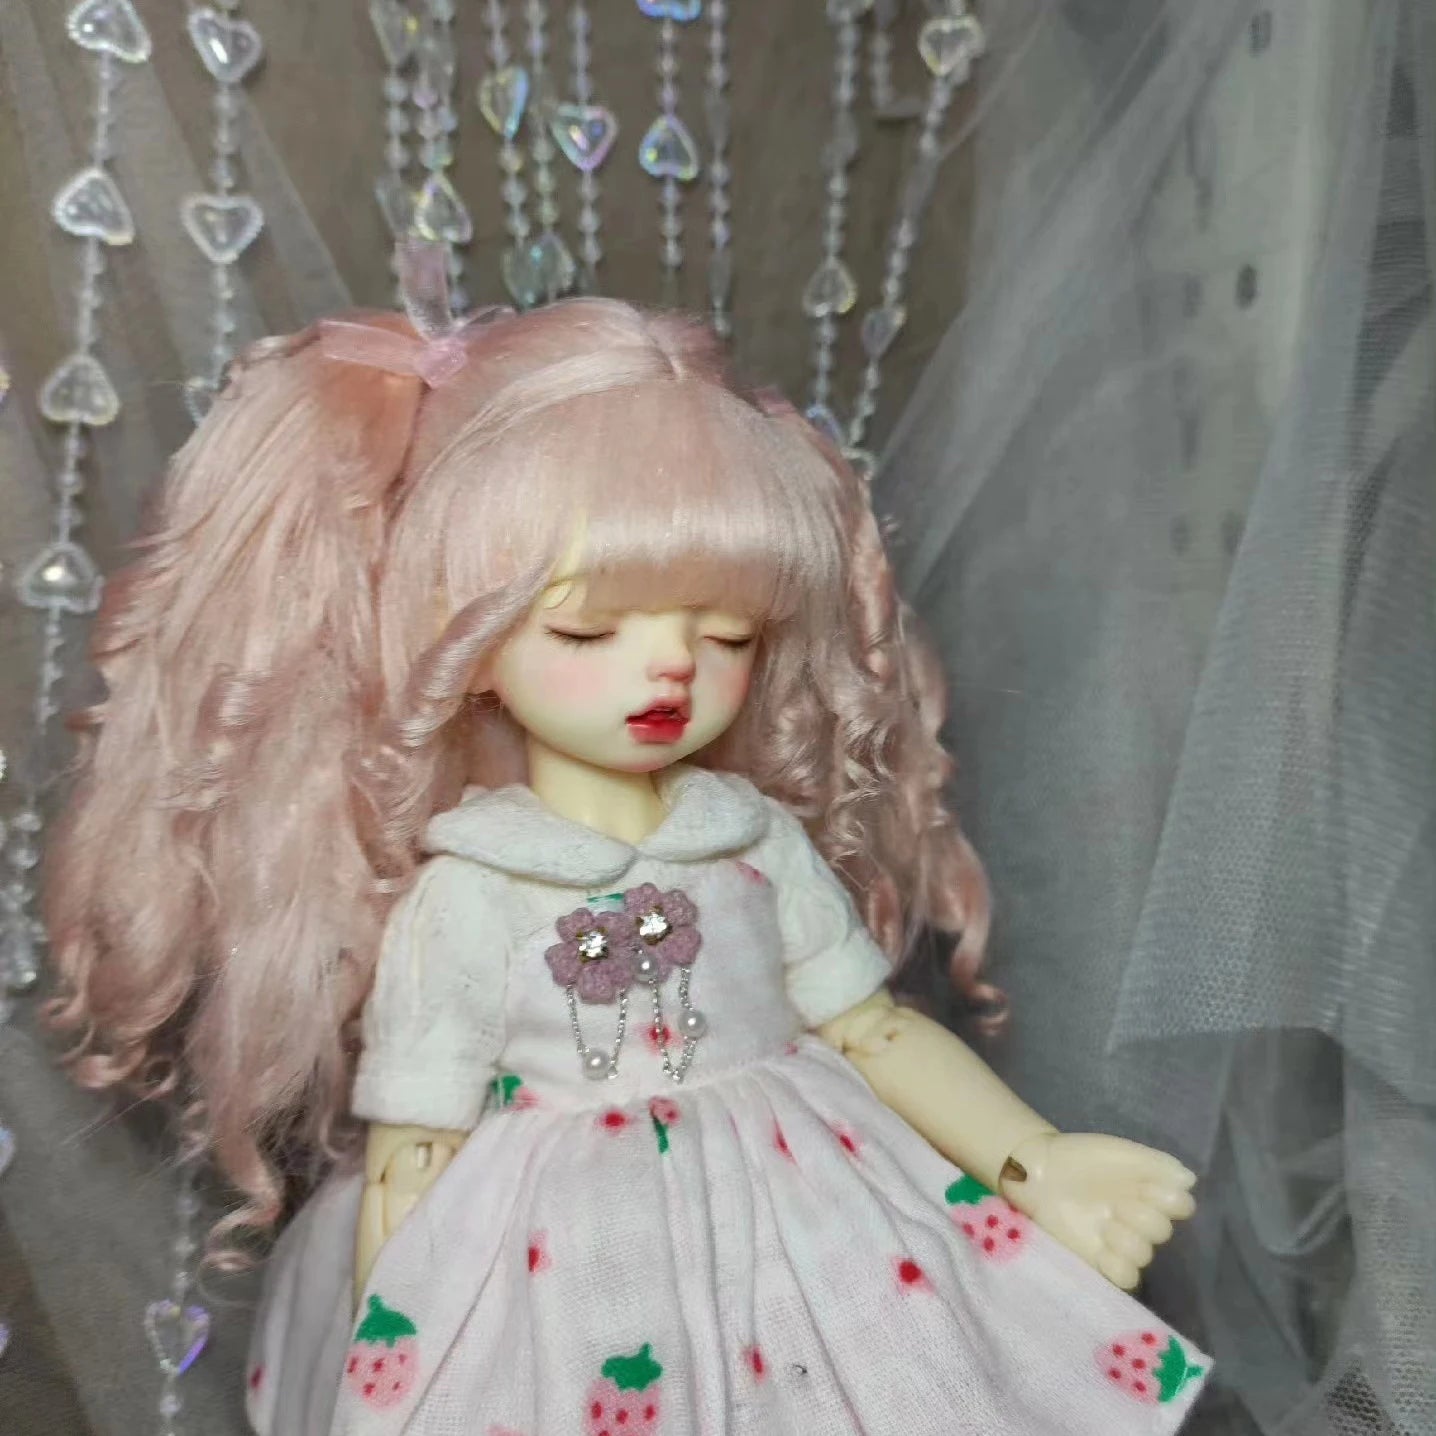 BABY HOUSE - Perruque de poupée colorée pour poupée princesse OB11, faux cheveux, peut être personnalisée, 1/8 1/6 1/4 1/3 1/12 BJD